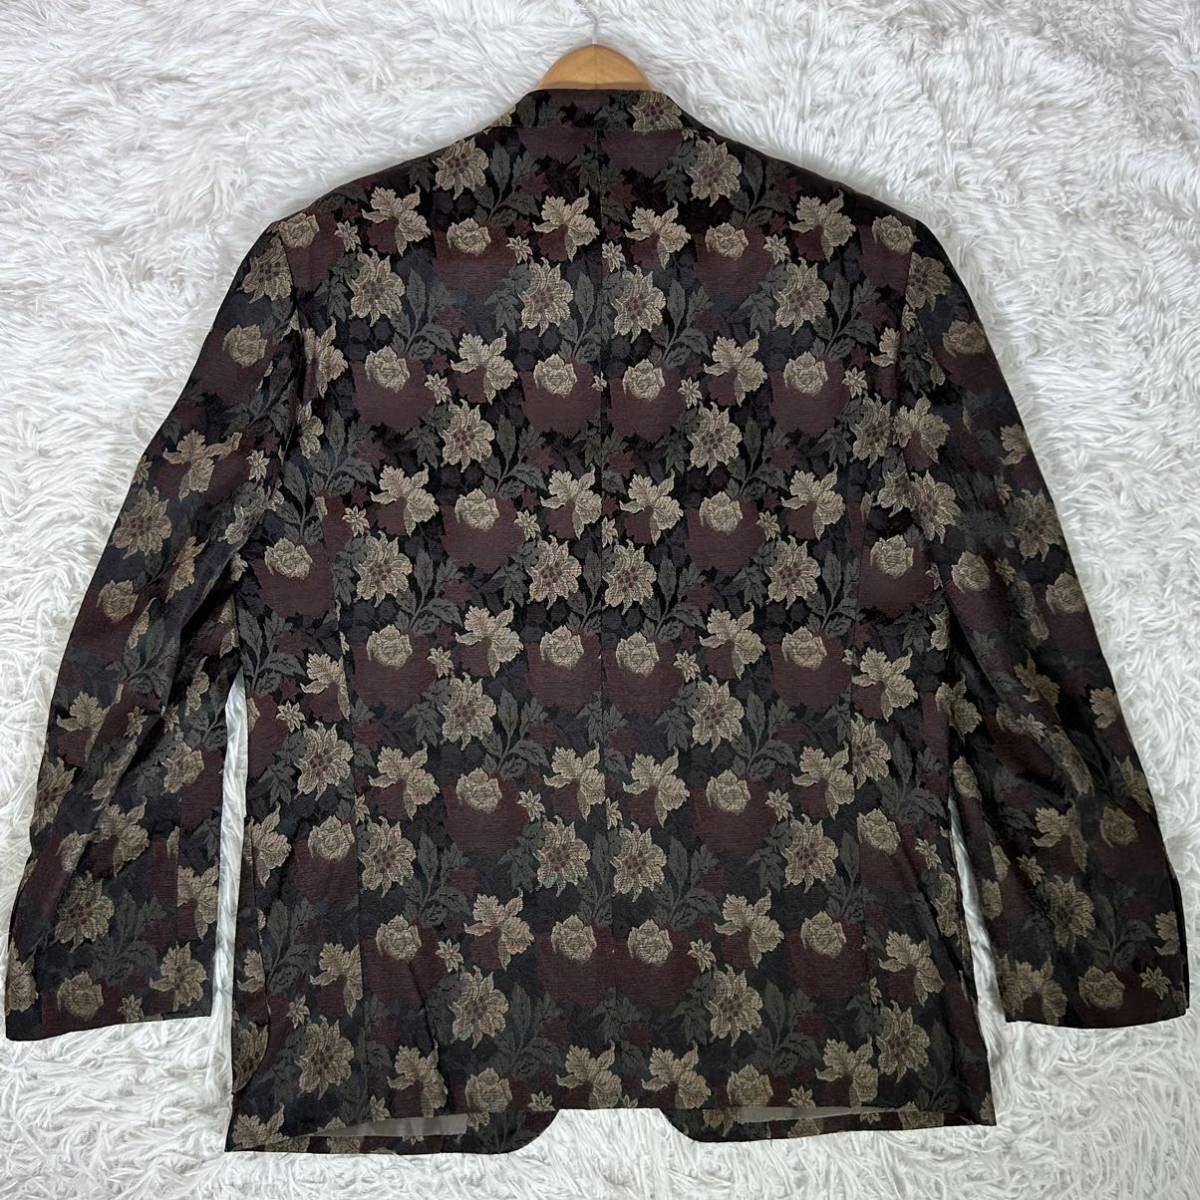 90s[ редкий ]TAKEO KIKUCHI JACKETS Takeo Kikuchi tailored jacket 3B уровень возврат . необшитый на спине цветочный принт общий рисунок Jaguar do вышивка 2(M) размер мужской 